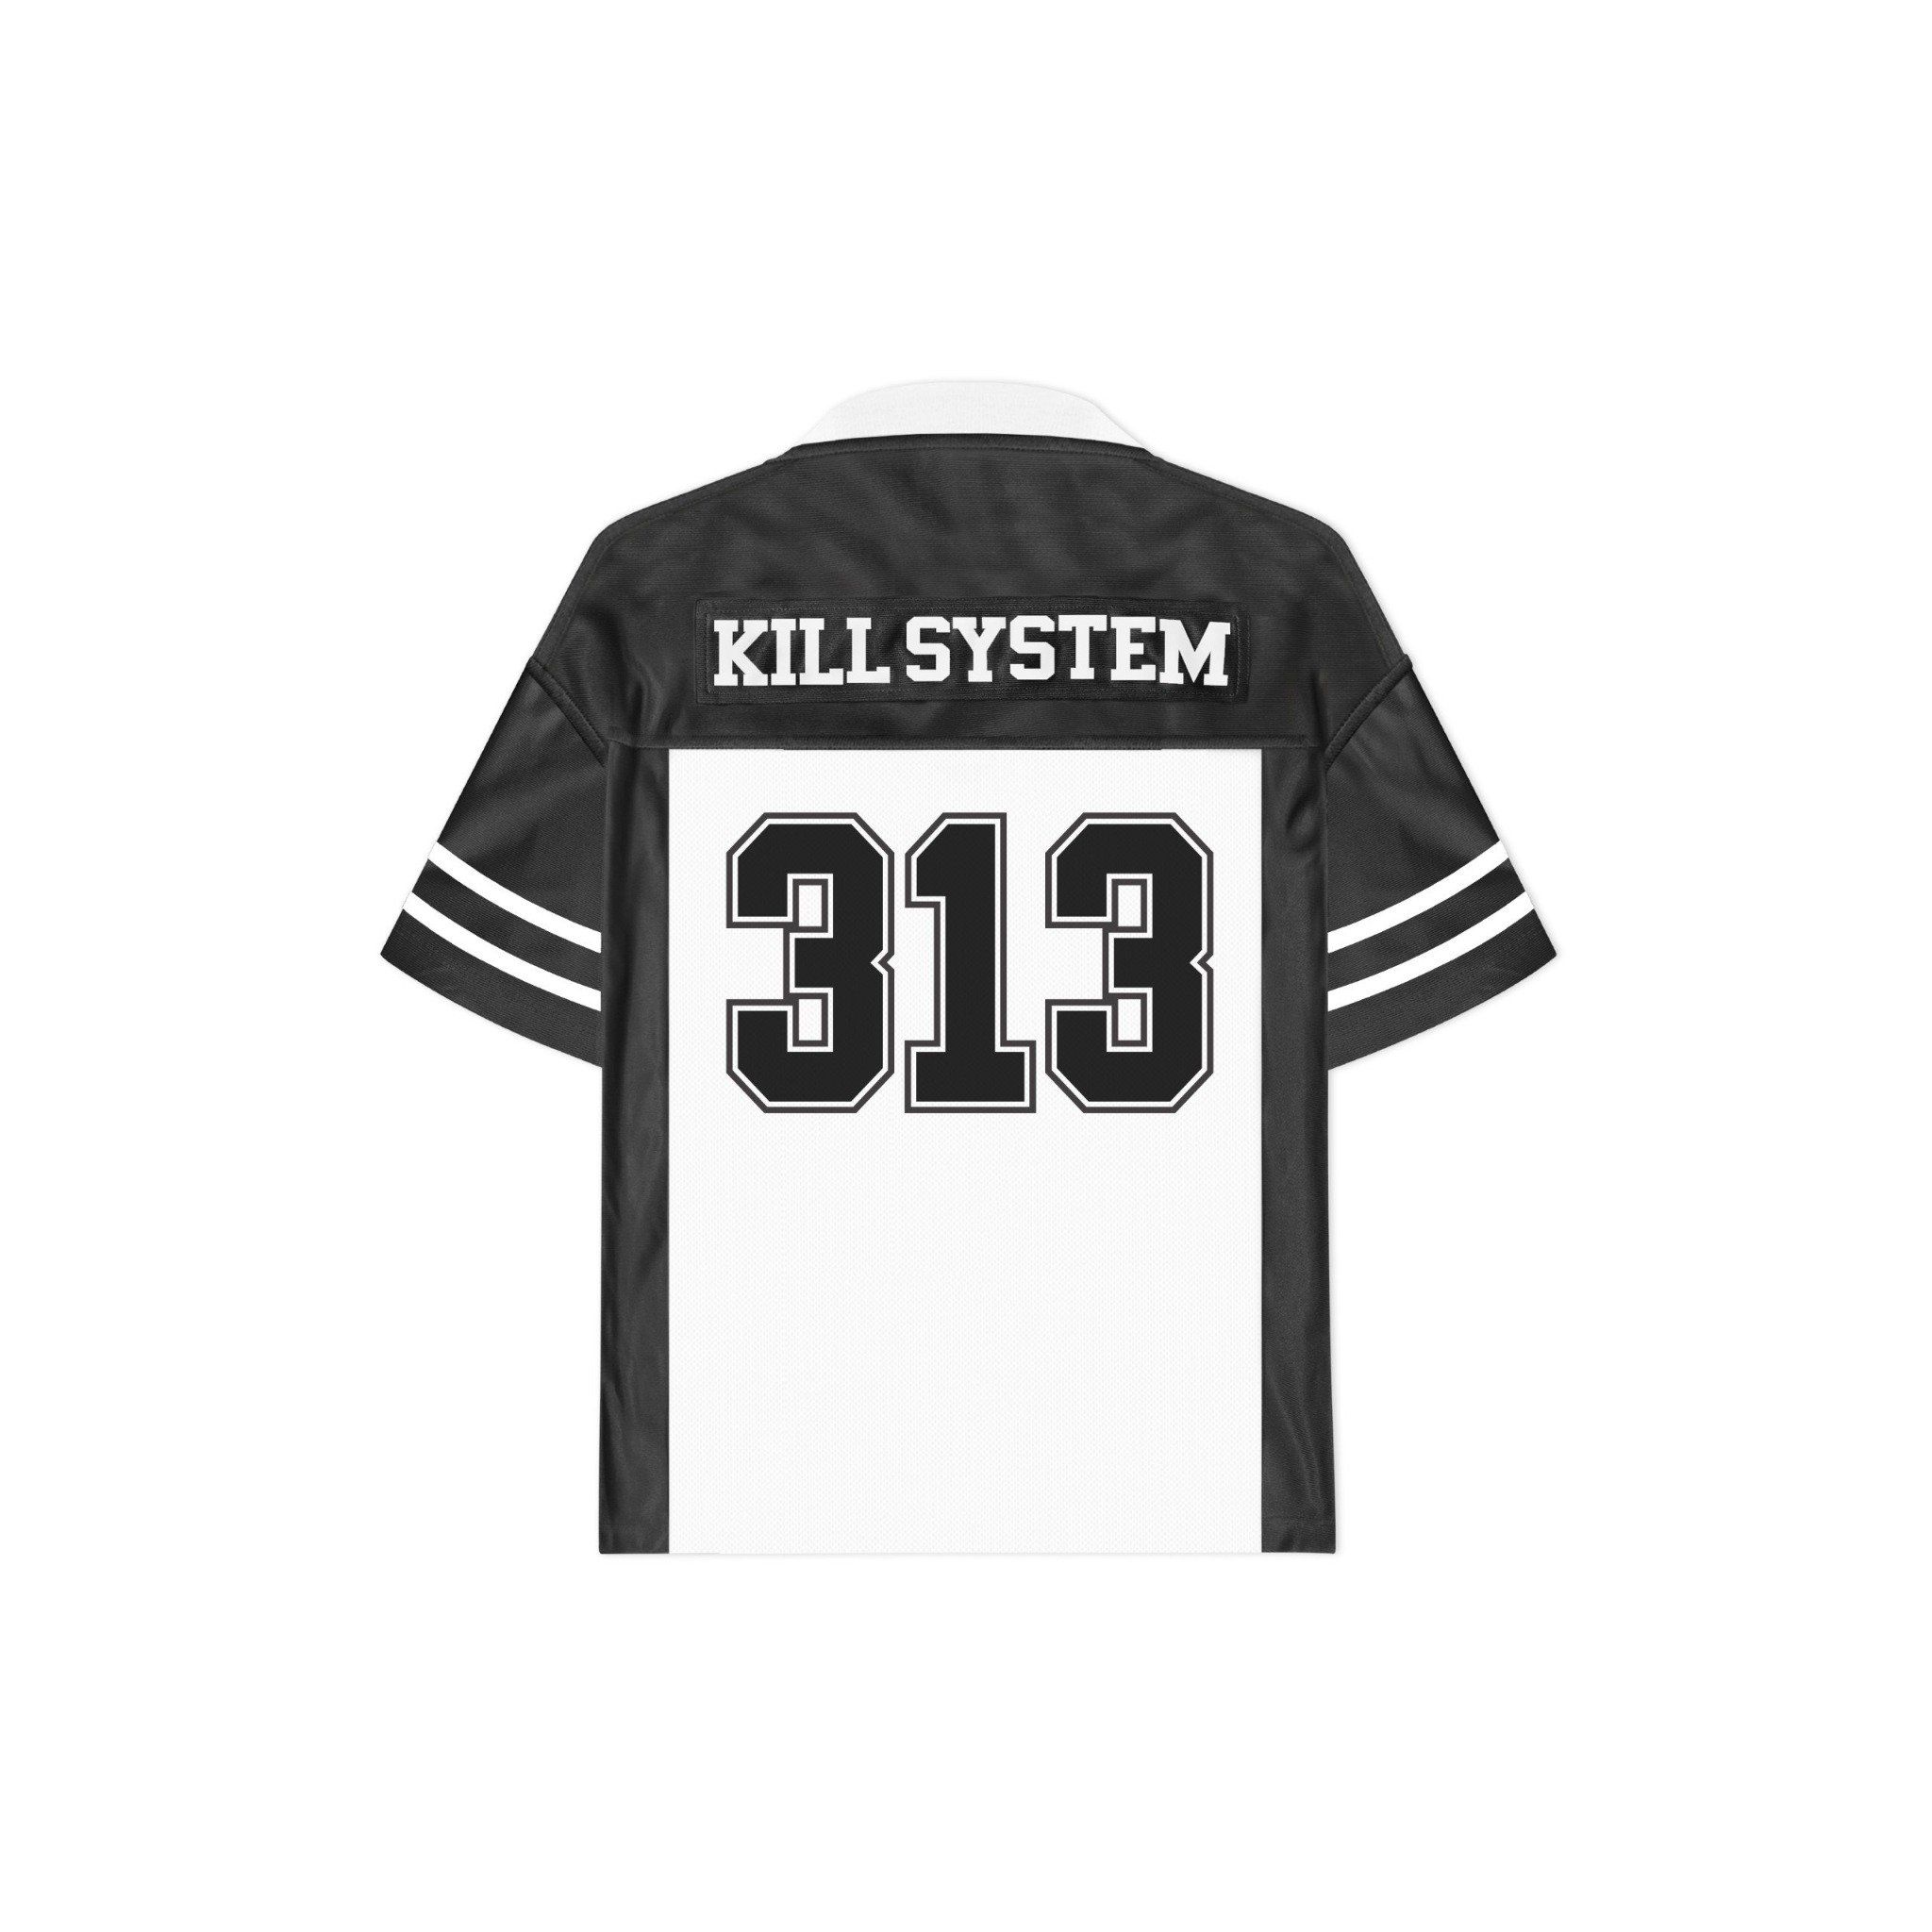  Áo thể thao jersey oversize 313 Kill System 